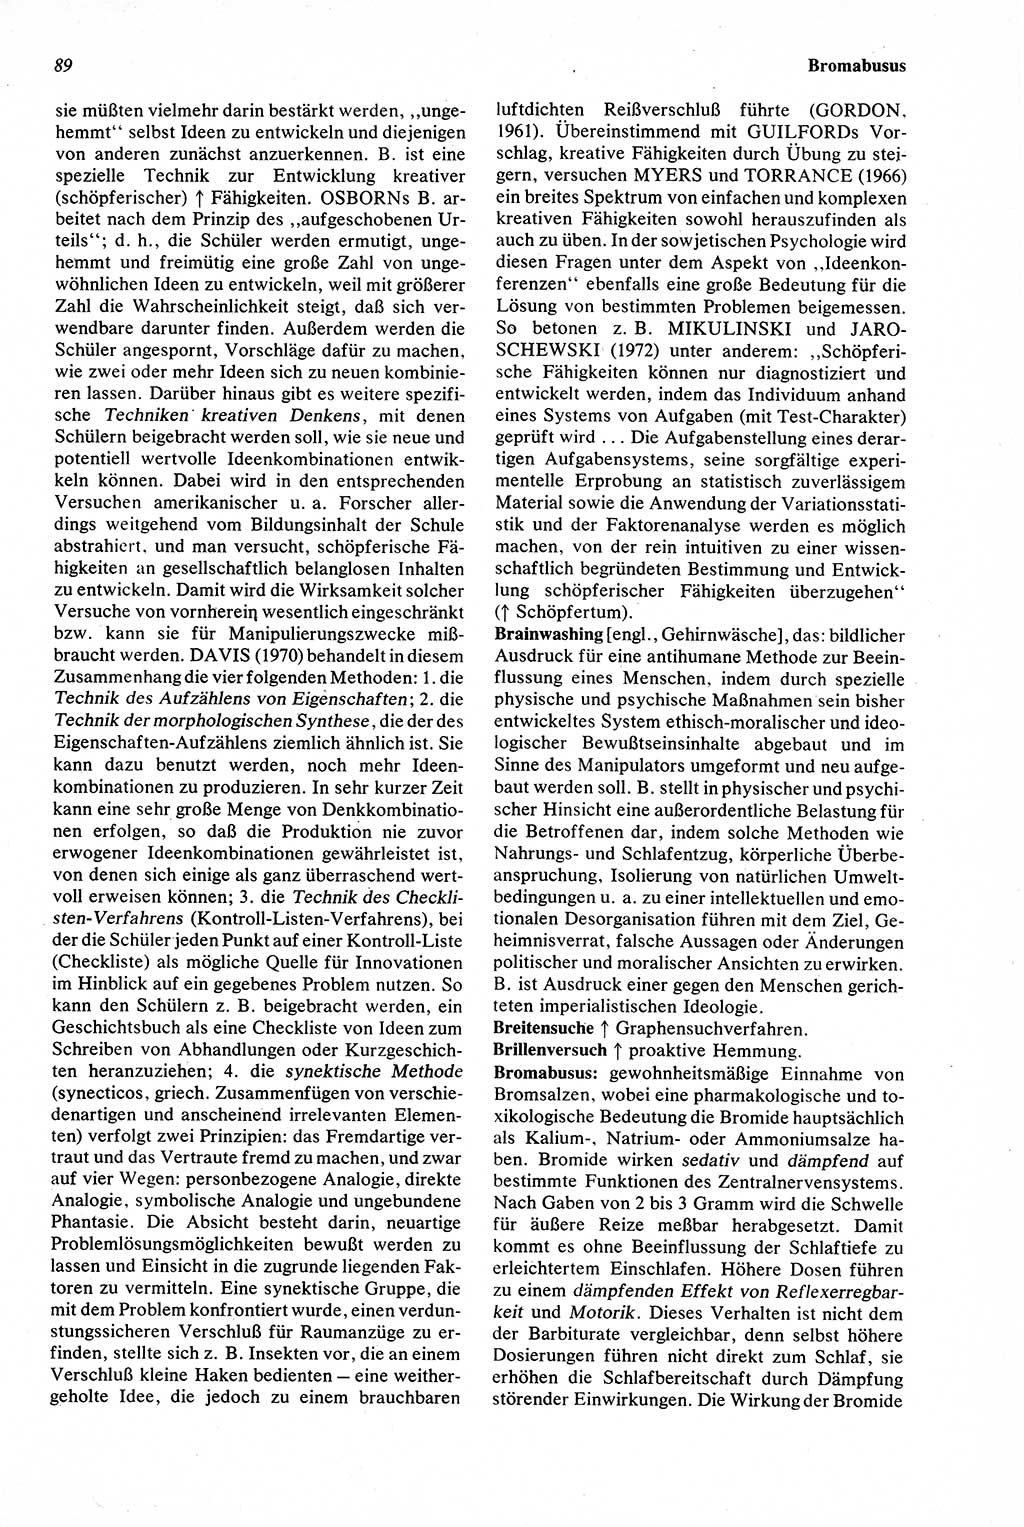 Wörterbuch der Psychologie [Deutsche Demokratische Republik (DDR)] 1976, Seite 89 (Wb. Psych. DDR 1976, S. 89)